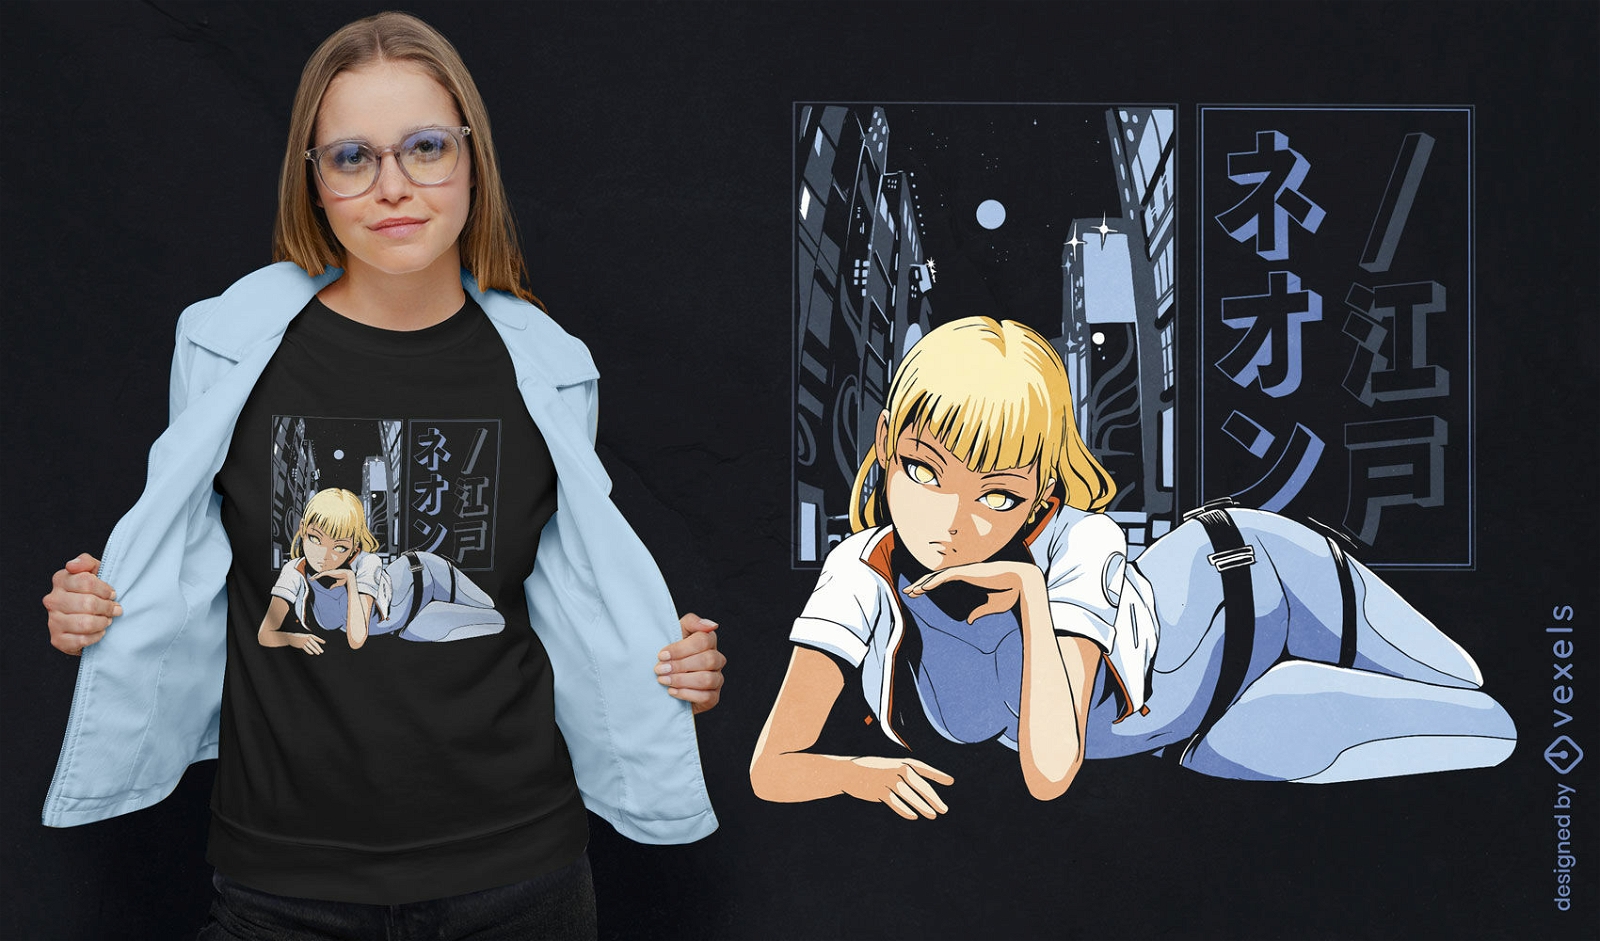 Diseño de camiseta de chica anime futurista.